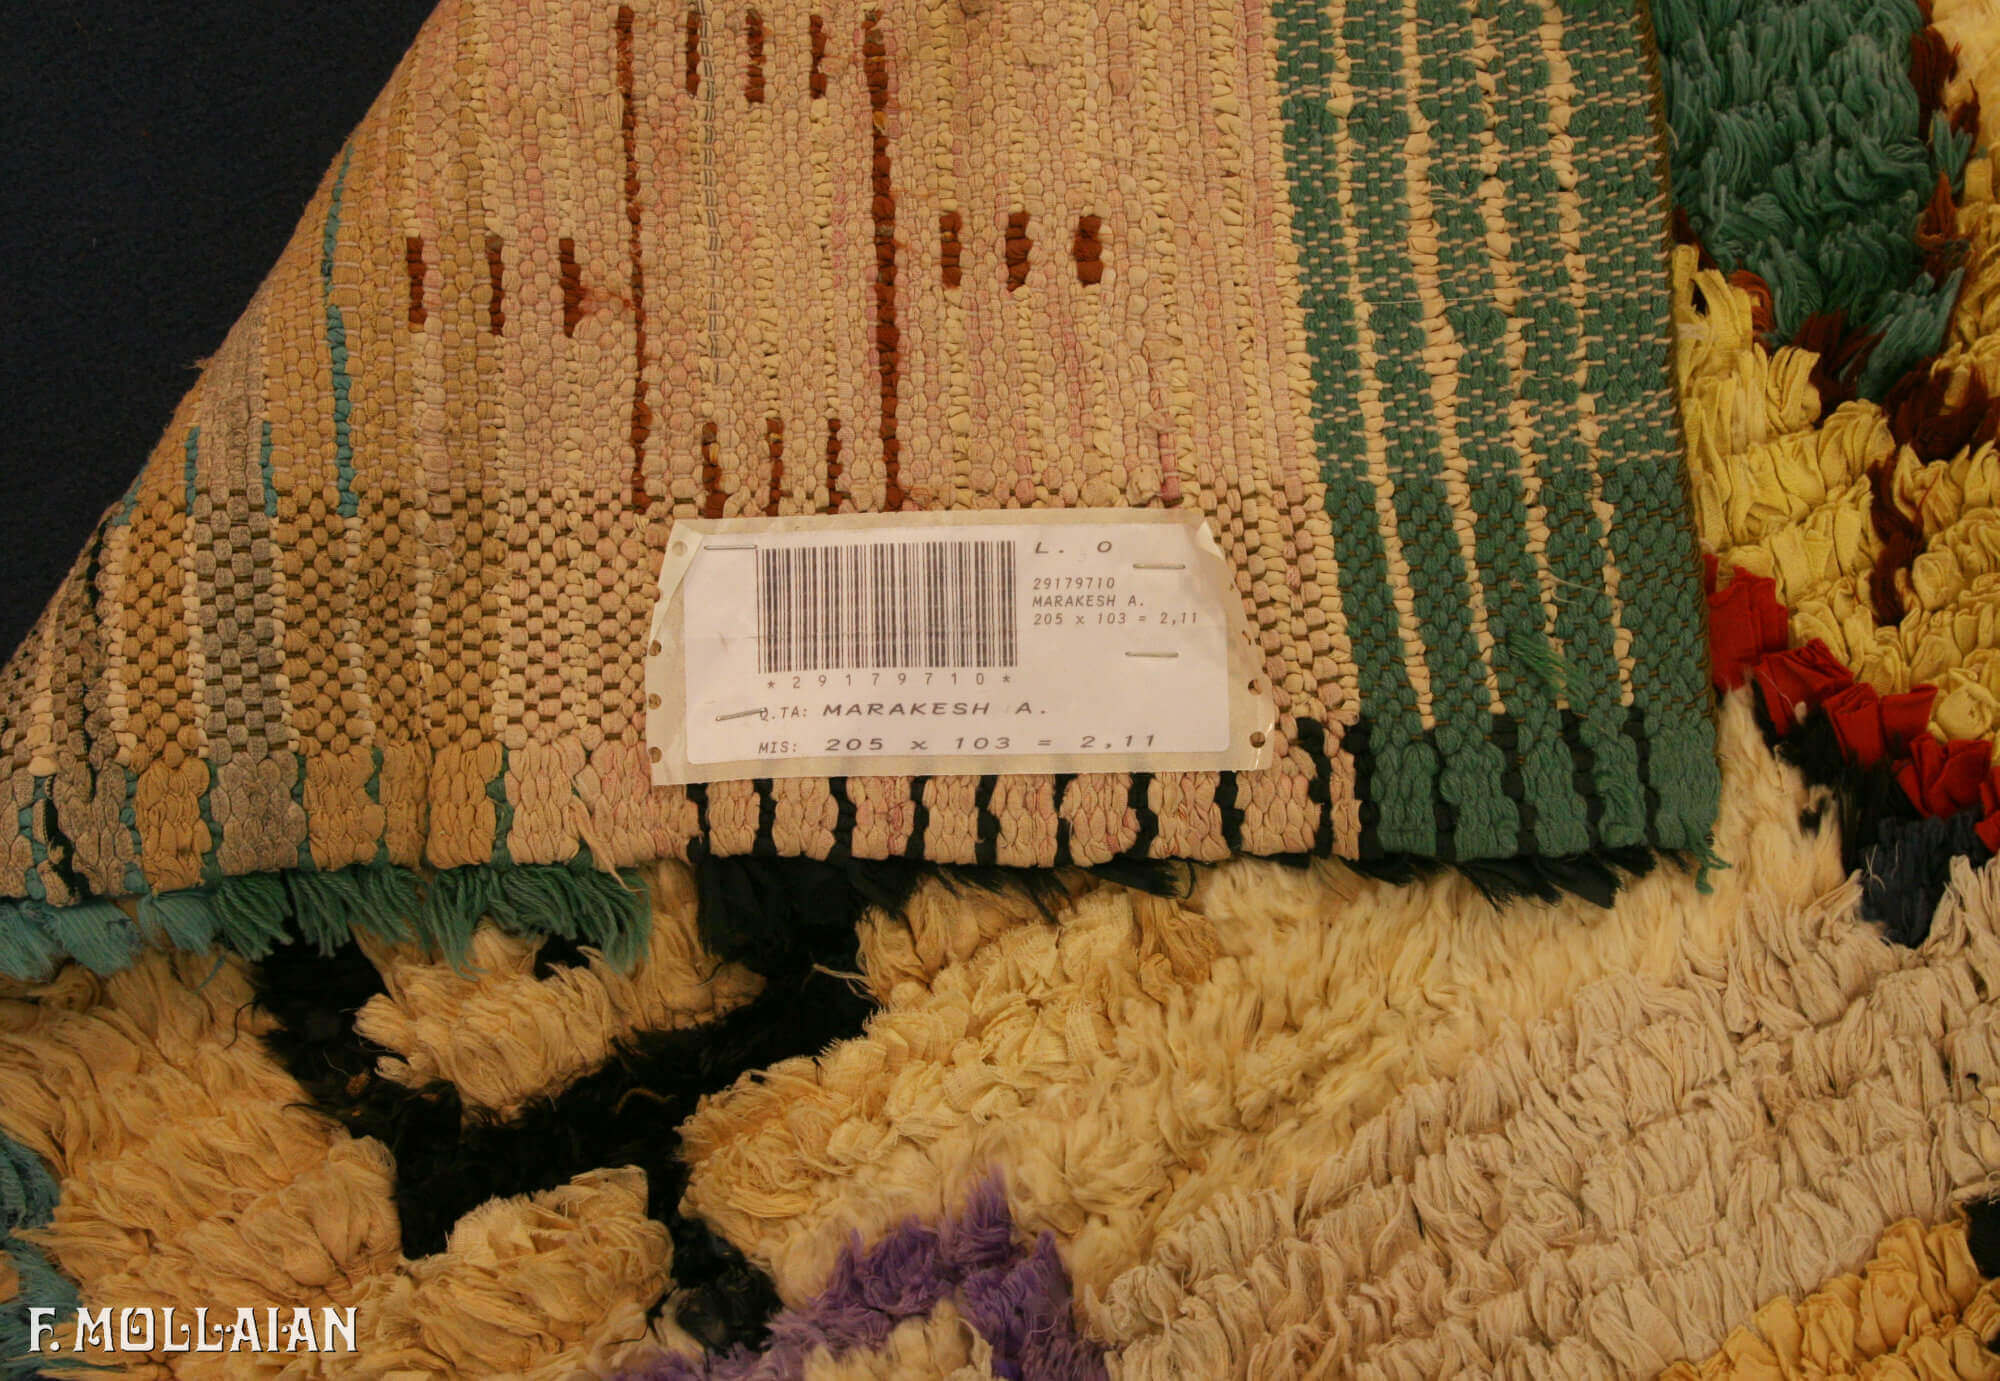 کناره دستباف کوچک نیمه آنتیک مراکش کد:۲۹۱۷۹۷۱۰